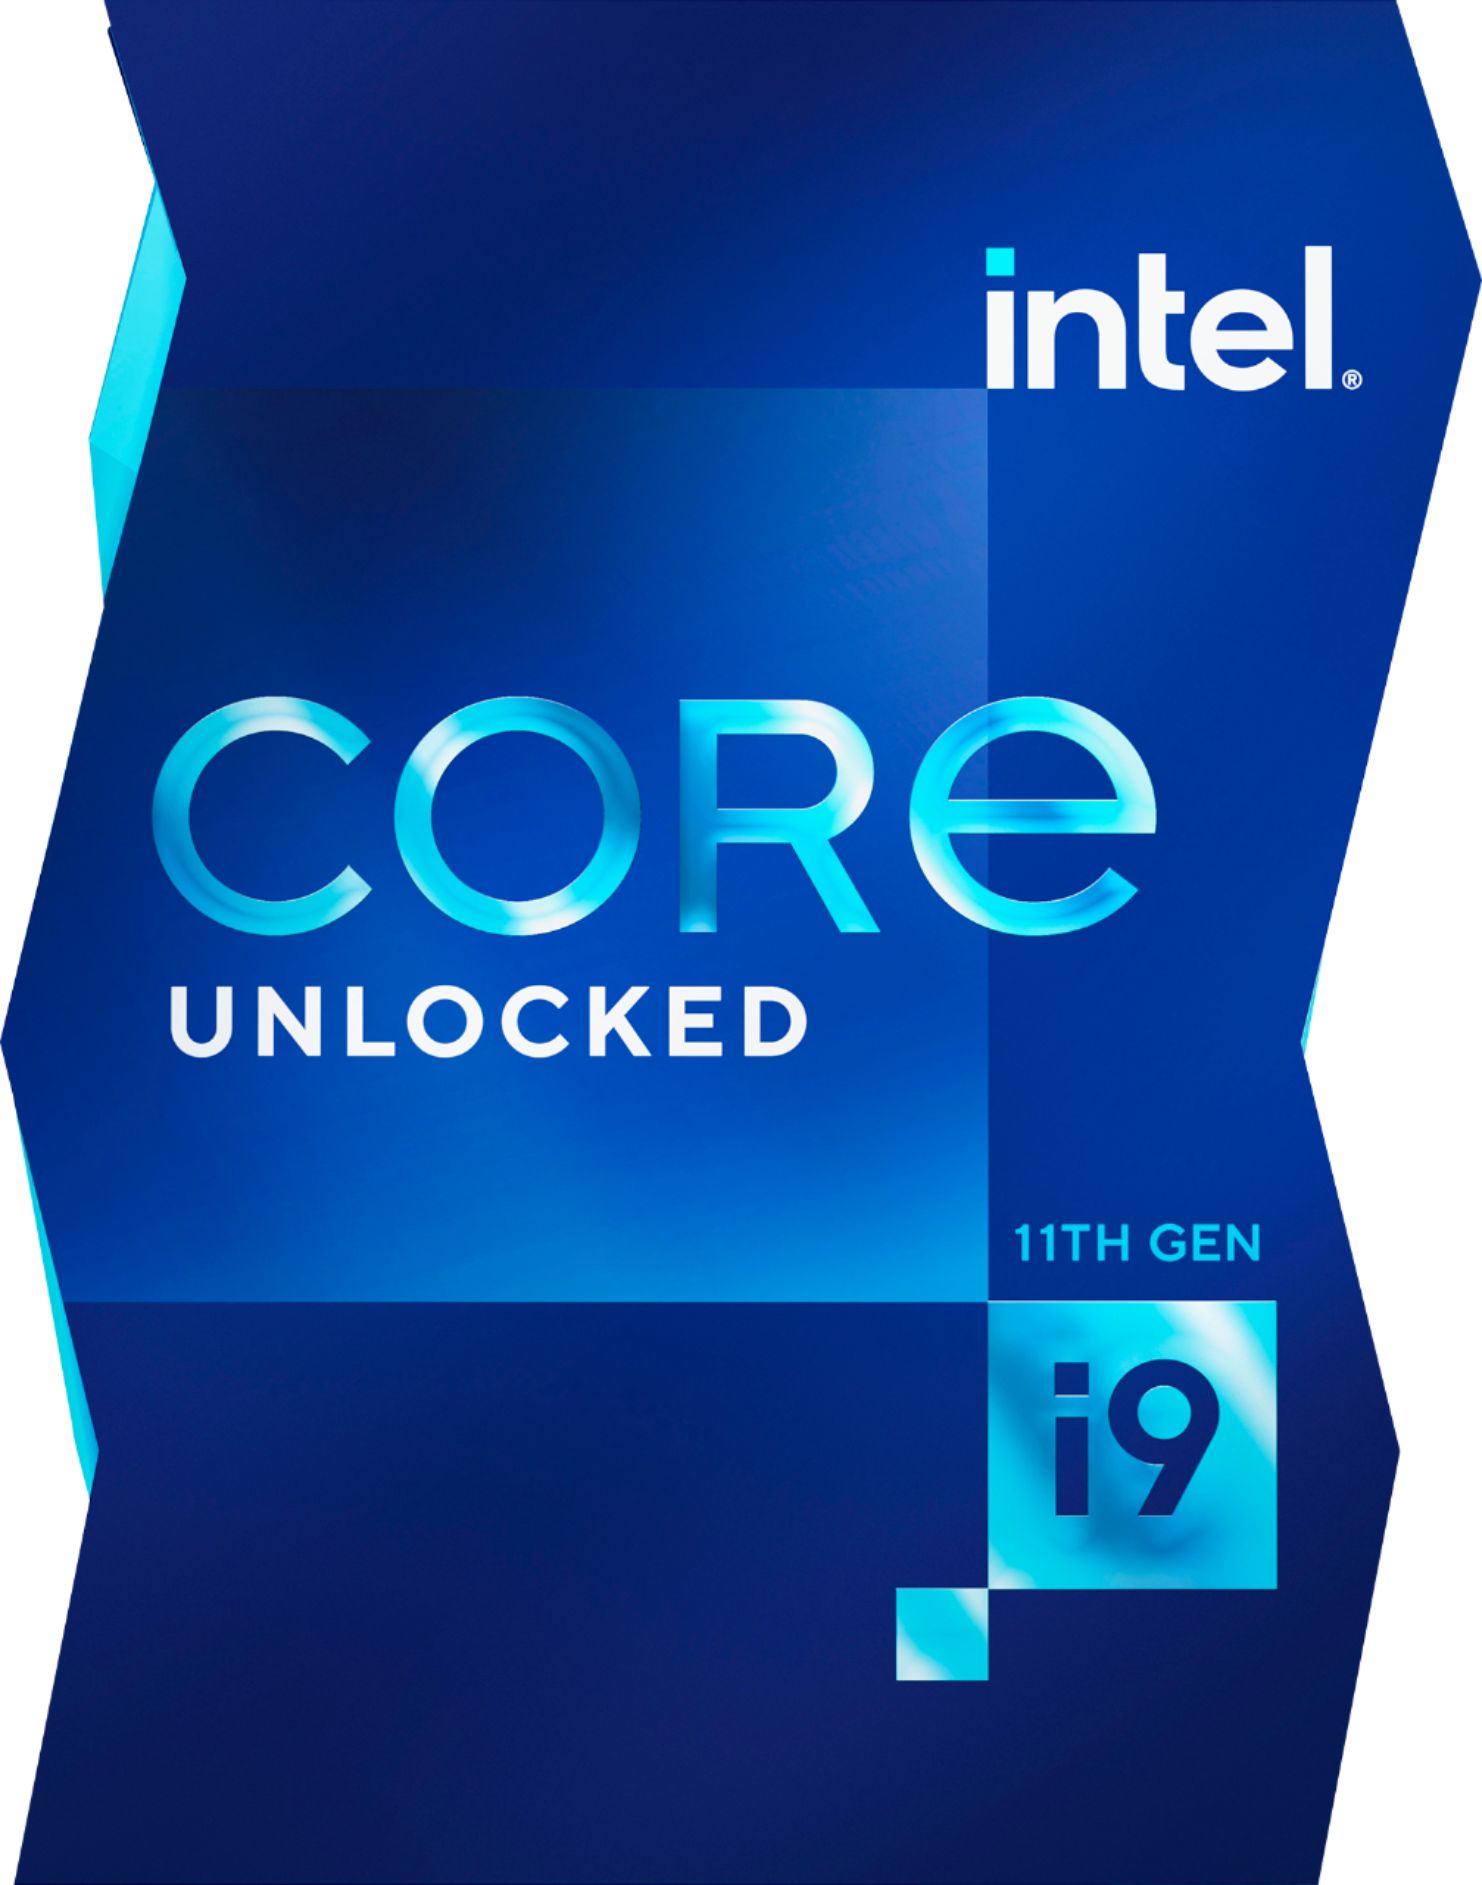 aankomst Ontwaken onderwerp Intel Core i9-11900K 11th Generation 8 Core 16 Thread 3.5 to 5.3 GHz  LGA1200 Unlocked Desktop Processor BX8070811900K - Best Buy